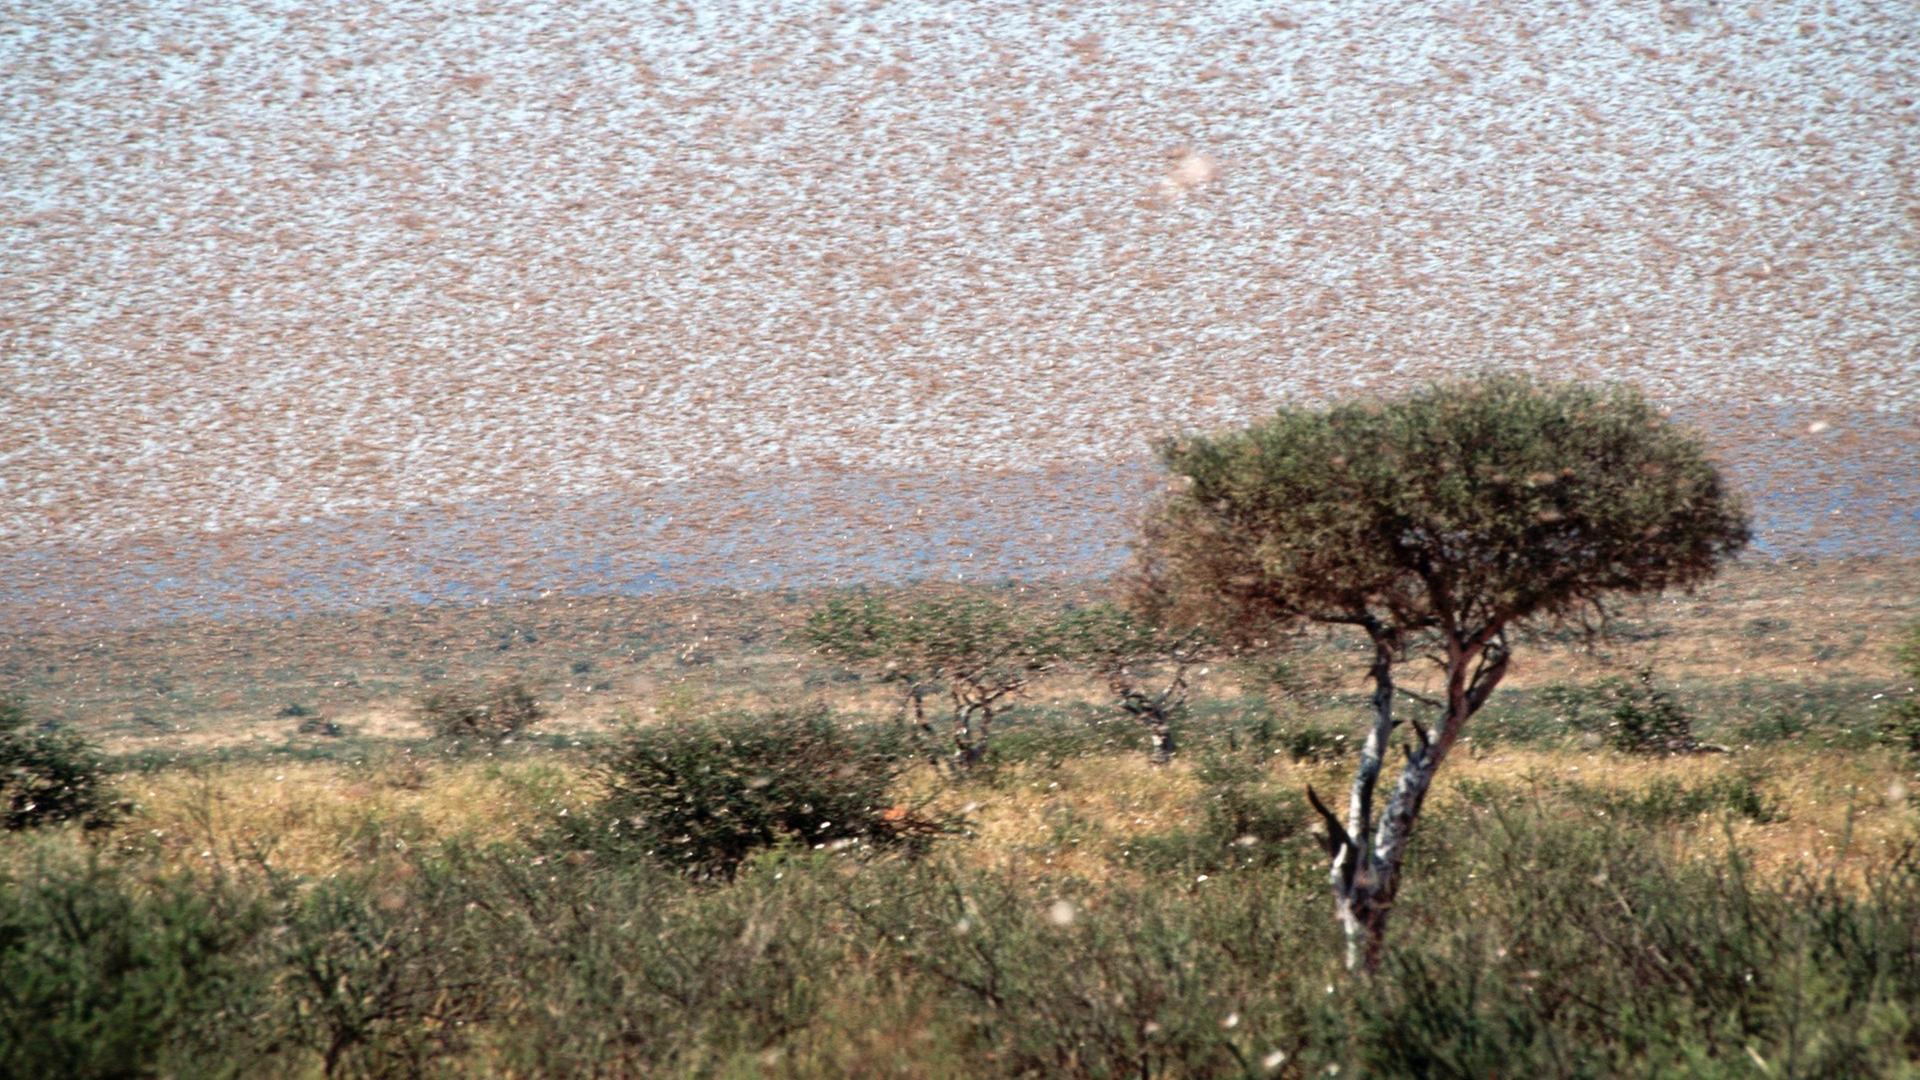 Ein rieser Schwarm von Wanderheuschrecken umkreist einen Baum in der kenianischen Steppe.